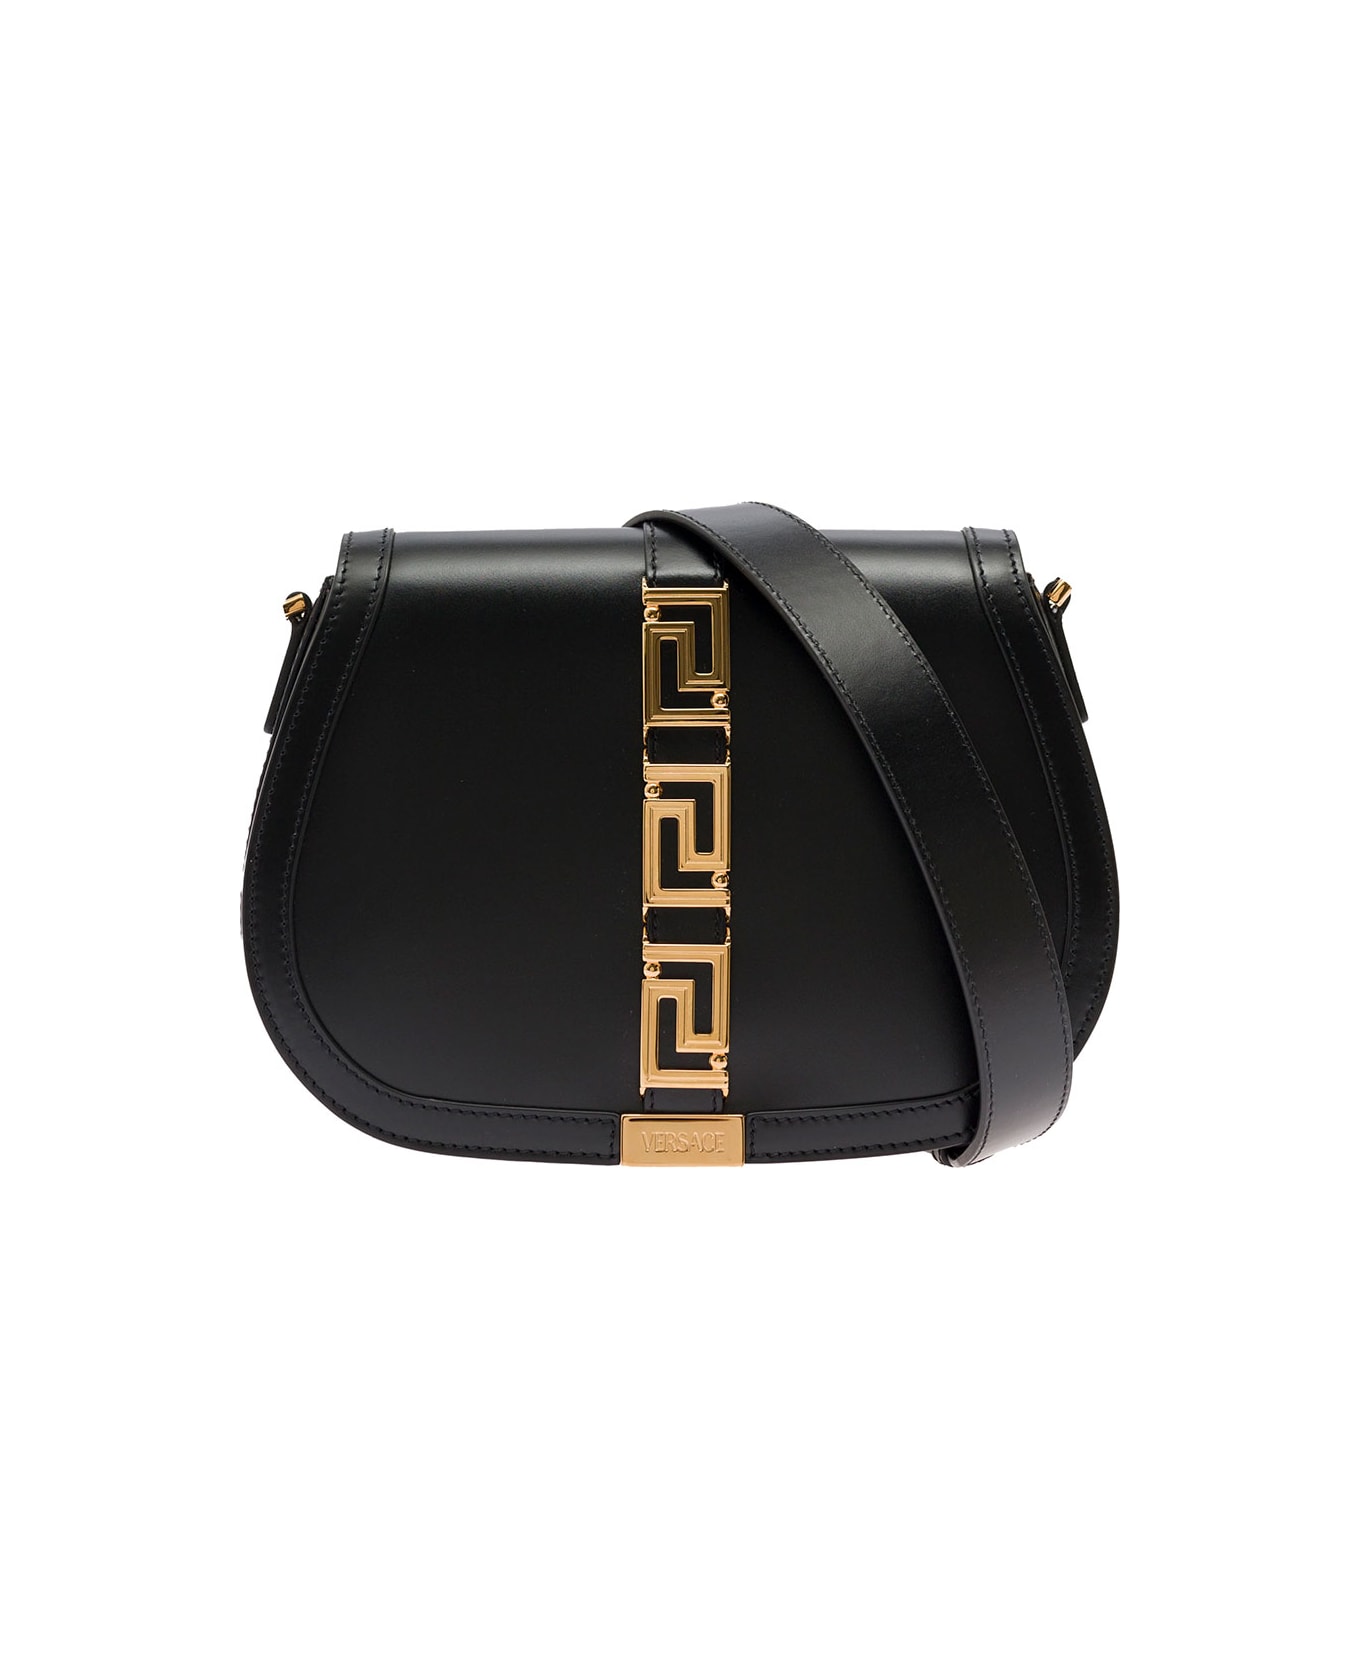 Versace Greca Goddess Shoulder Bag In Black Leather Woman - Black